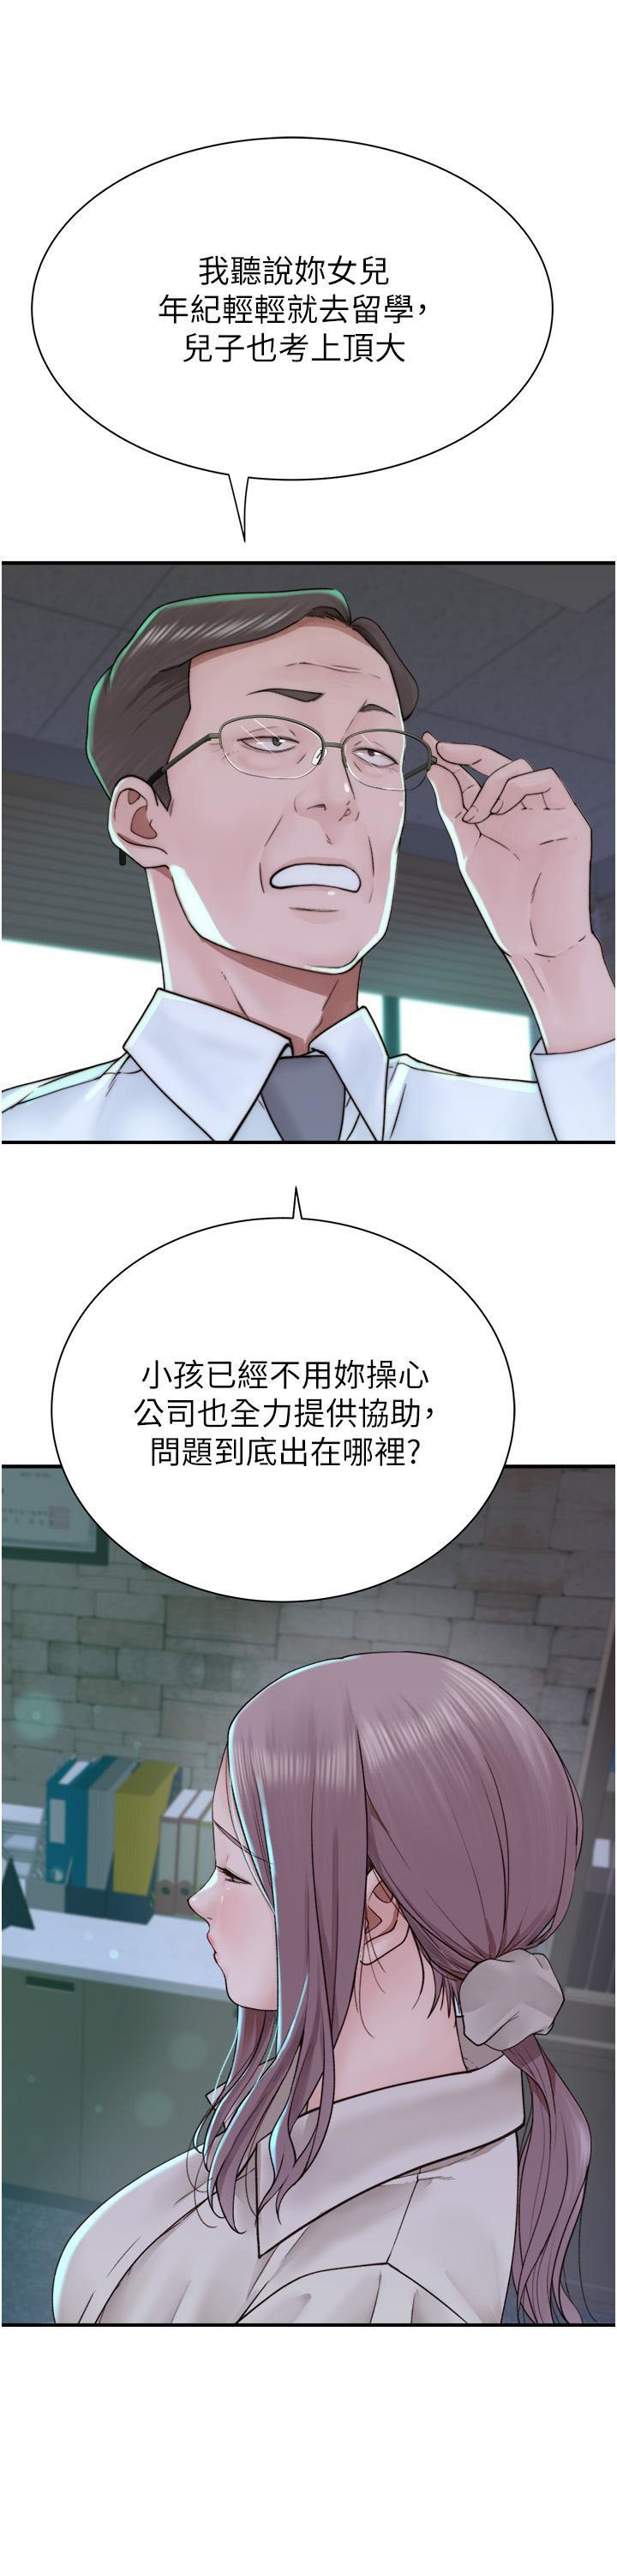 韩国污漫画 繼母的香味 第19话 抚慰志远的「最后手段」 19